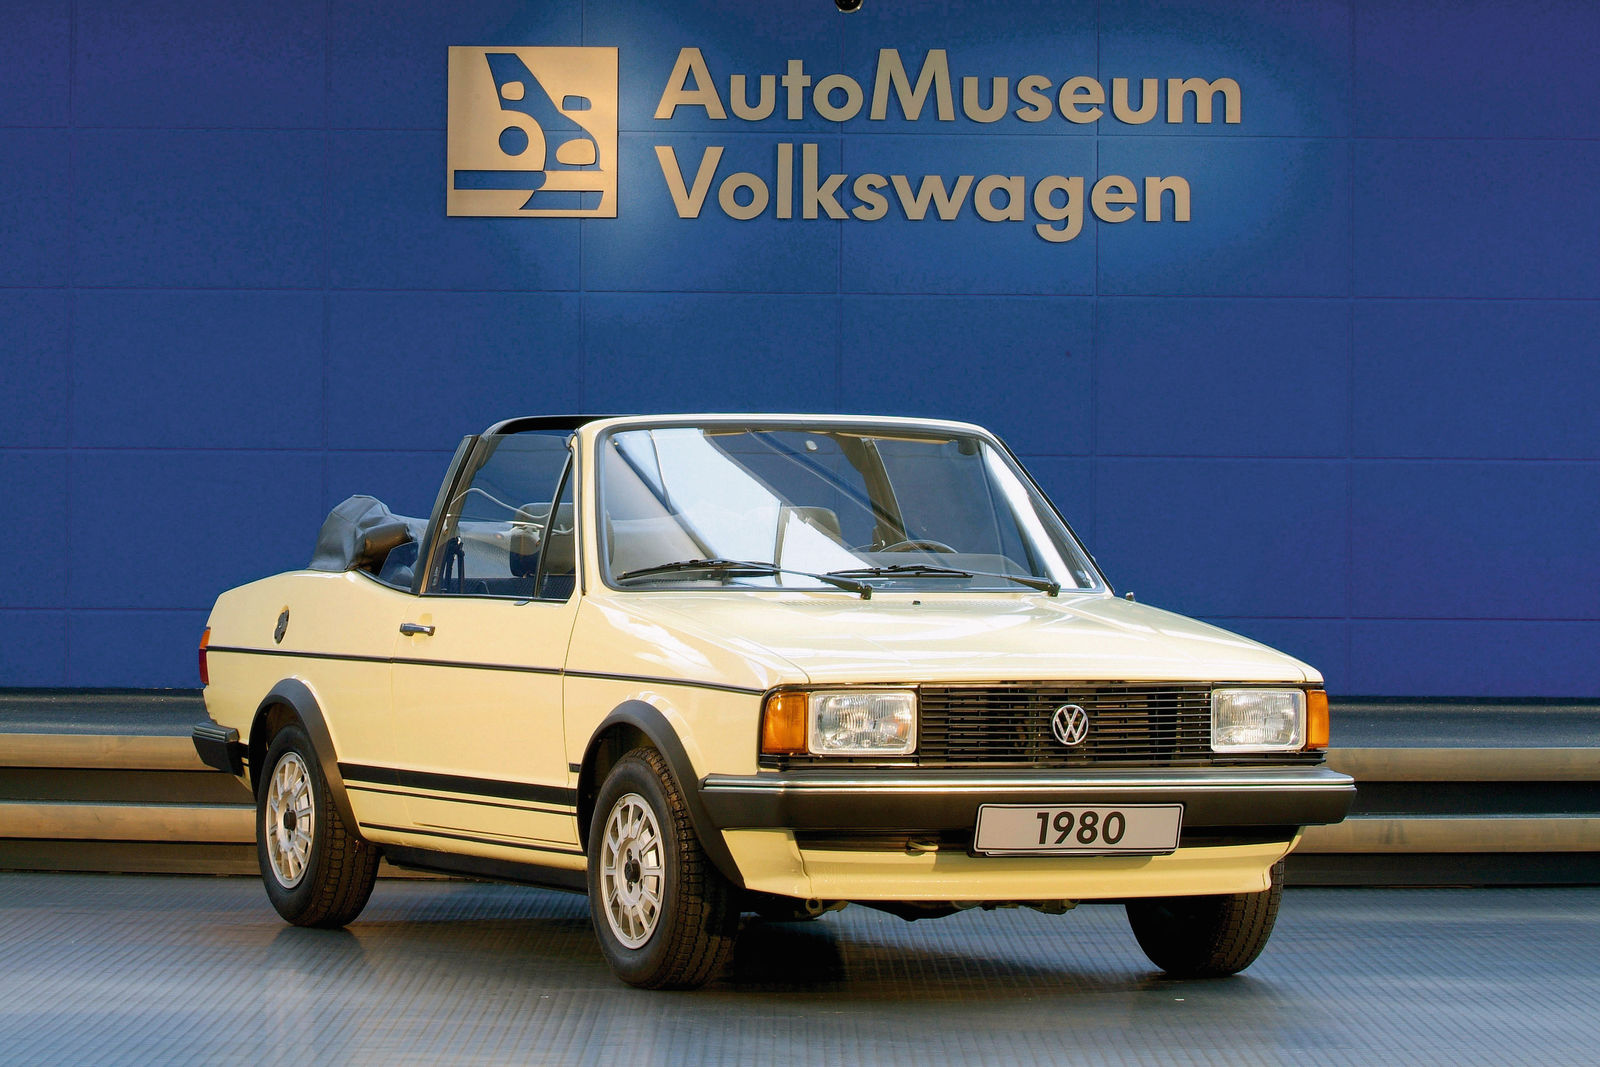 Baujahr 1980Motor 4-Zylinder-Reihenmotor wassergekuehltLeistung 70 PSHubraum  1457 ccmHoechstgeschwindigkeit 156 kmhAls Spezialist fuer vielfaeltige Verdeck- und Dachkonzepte hat die Wilhelm Karmann GmbH neben der Produktion von Cabriolets fuer verschiedene Hersteller zahlreiche Eigenentwicklungen von markteingefuehrten Limousinen forciert So entstand 1980 auch das Jetta Cabriolet Zu diesem Zeitpunkt war das Golf-Cabrio bereits ein Jahr im Modellangebot von Volkswagen und hatte sich als wuerdiger Nachfolger des legendaeren Kaefer-Cabriolets erwiesen Ein Kritikpunkt am Golf-Cabriolet war bei einigen Kunden der relativ kleine Gepaeckraum Beim Jetta-Cabriolet das die gleichen Sicherheitsstandards wie das Golf-Cabriolet erfuellte und fuer den Insassenschutz auch mit einem Ueberrollbuegel versehen war waere dies nicht der Fall gewesenAufgrund des ueberaus groen Erfolges des Golf Cabrio wurde diese zusaetzliche Modellvariante jedoch fallengelassen